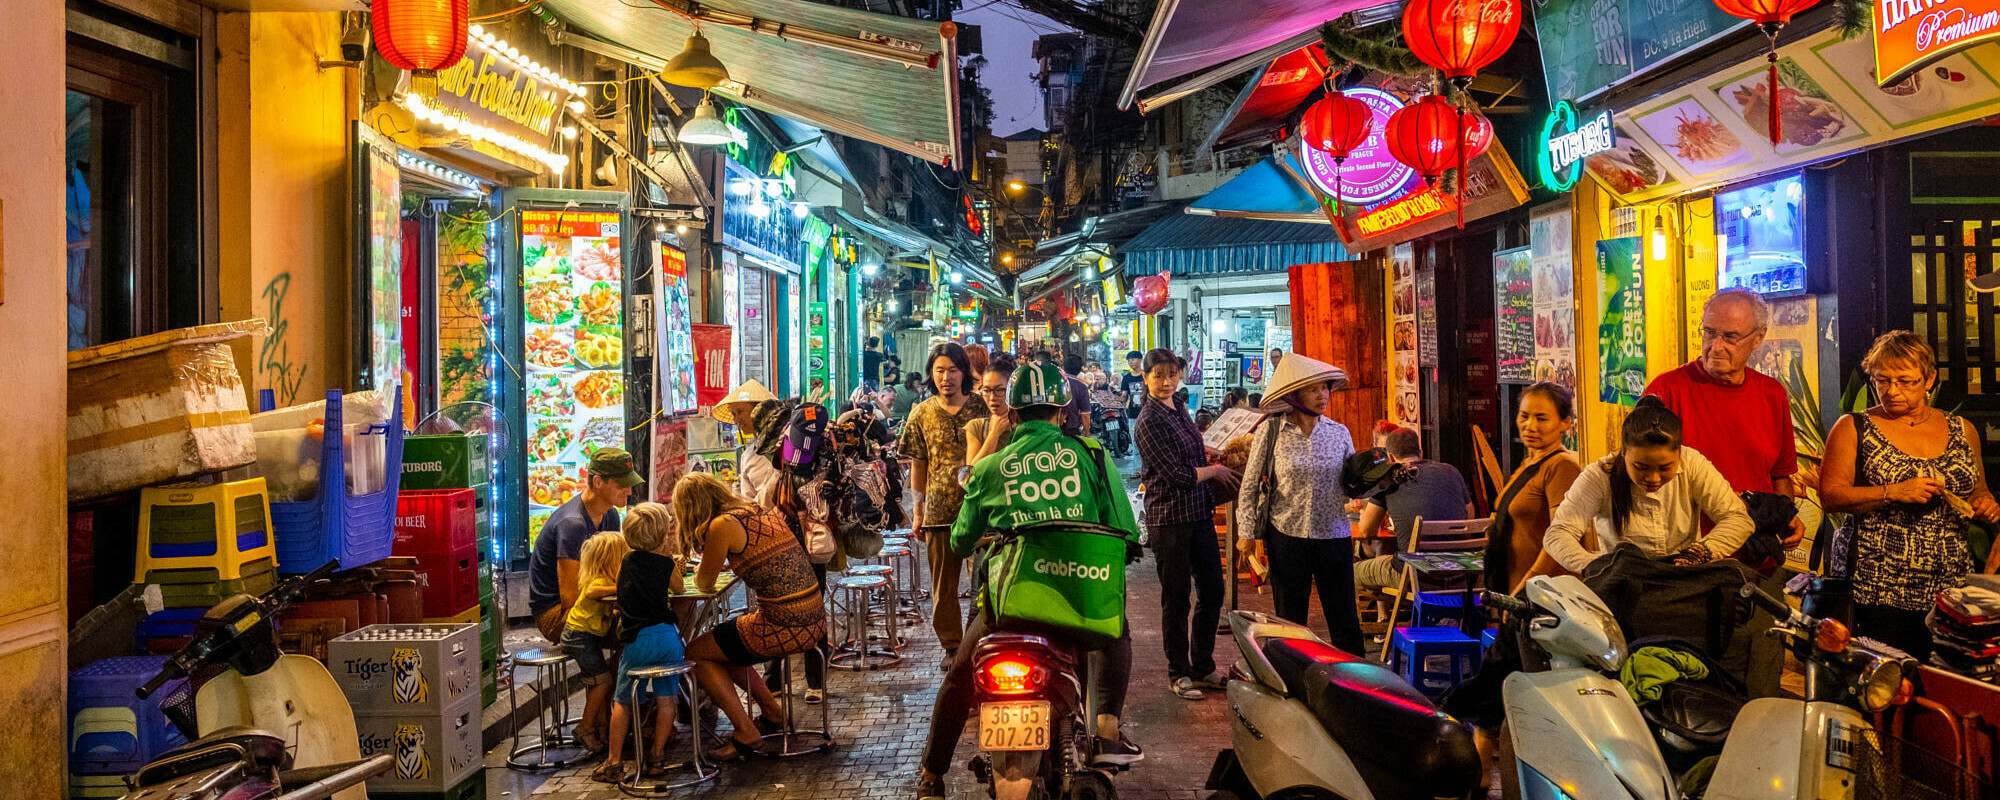 Fargerike og travle gater i Hanoi